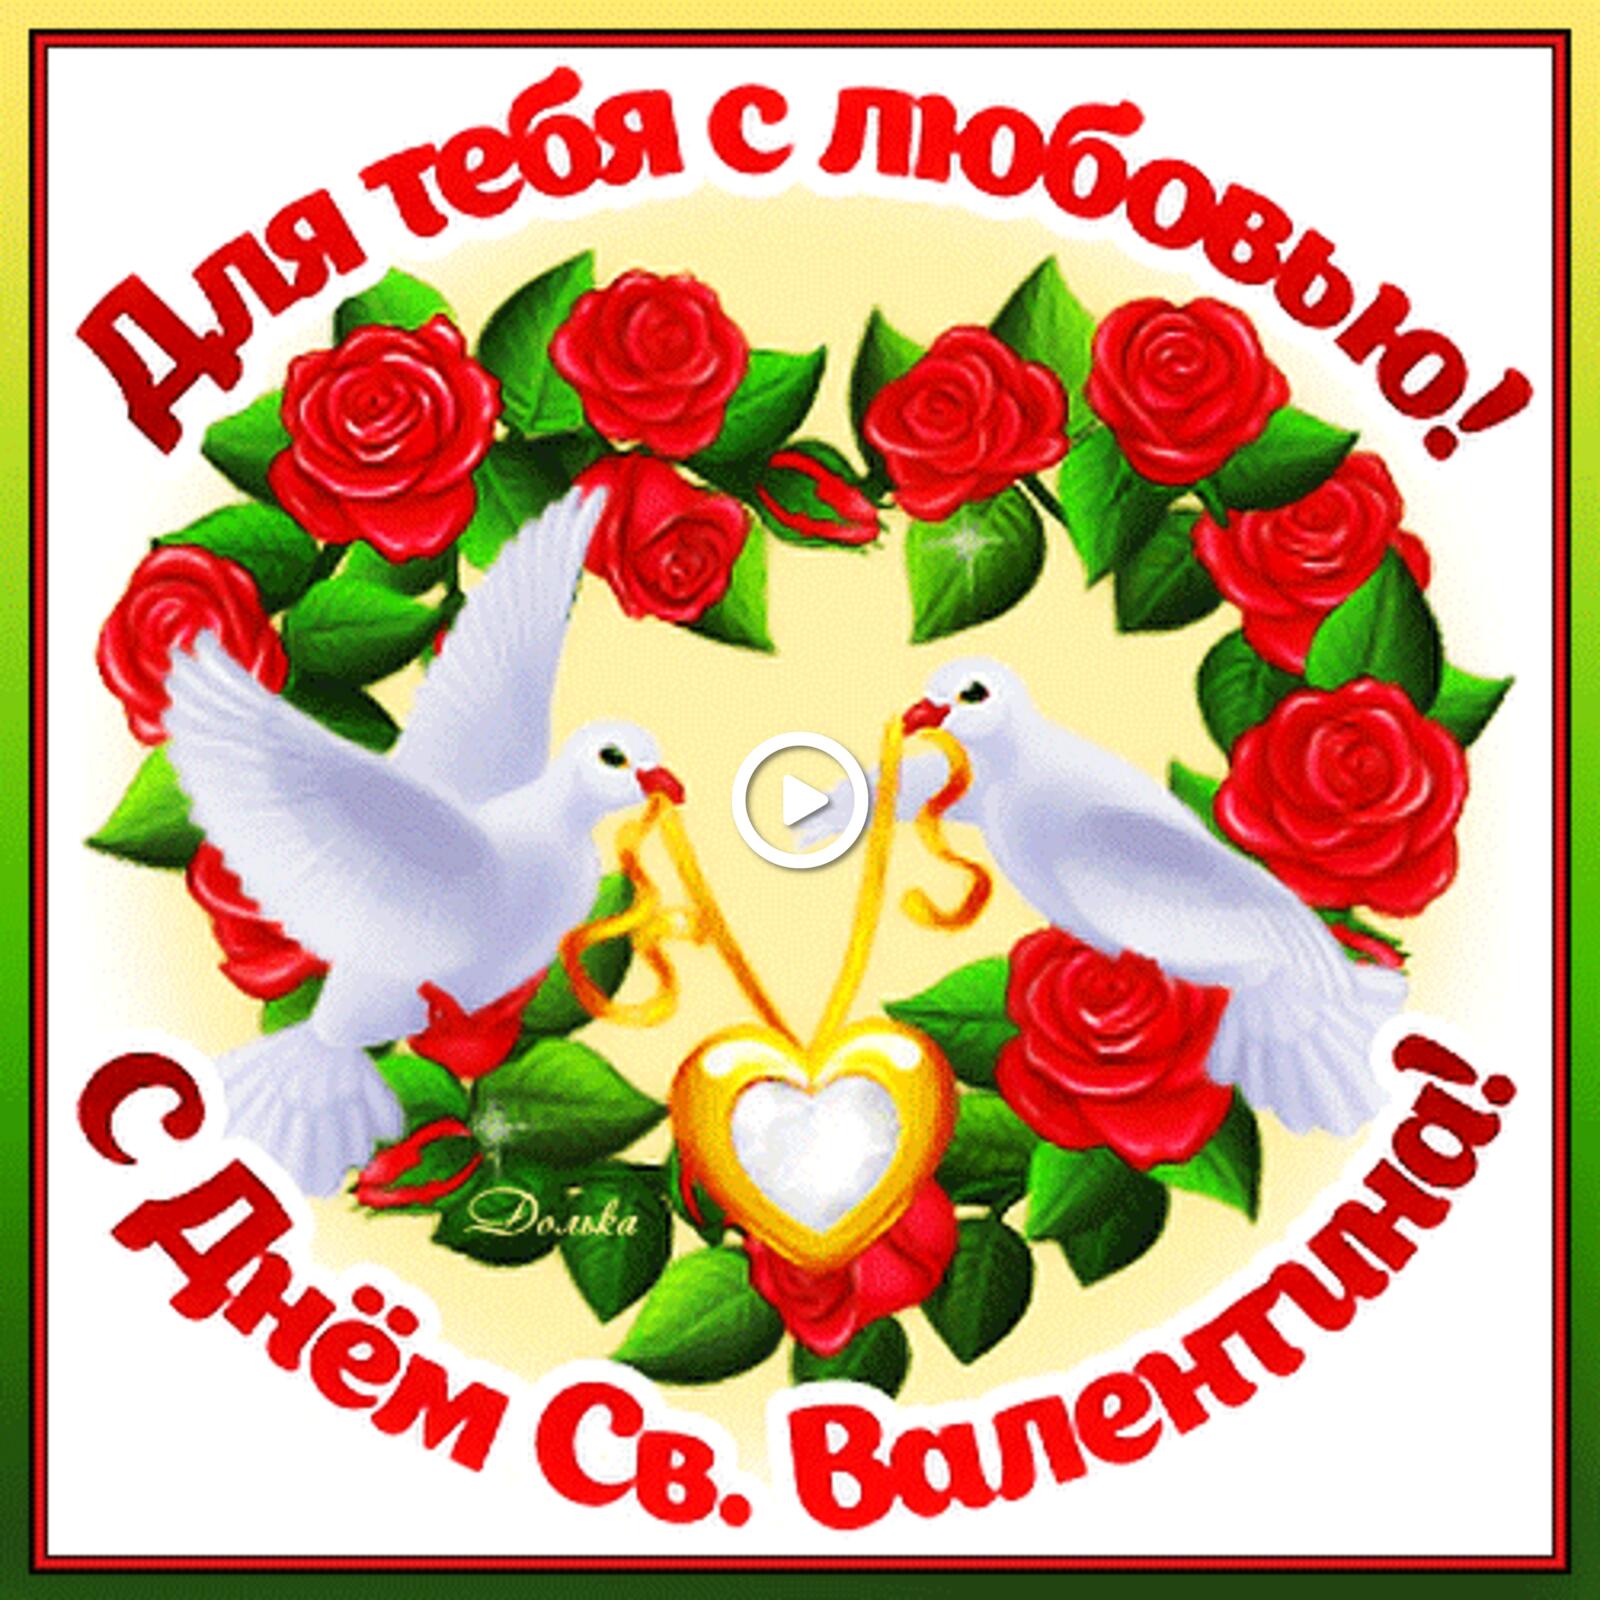 一张以情人节快乐 节日 玫瑰为主题的明信片